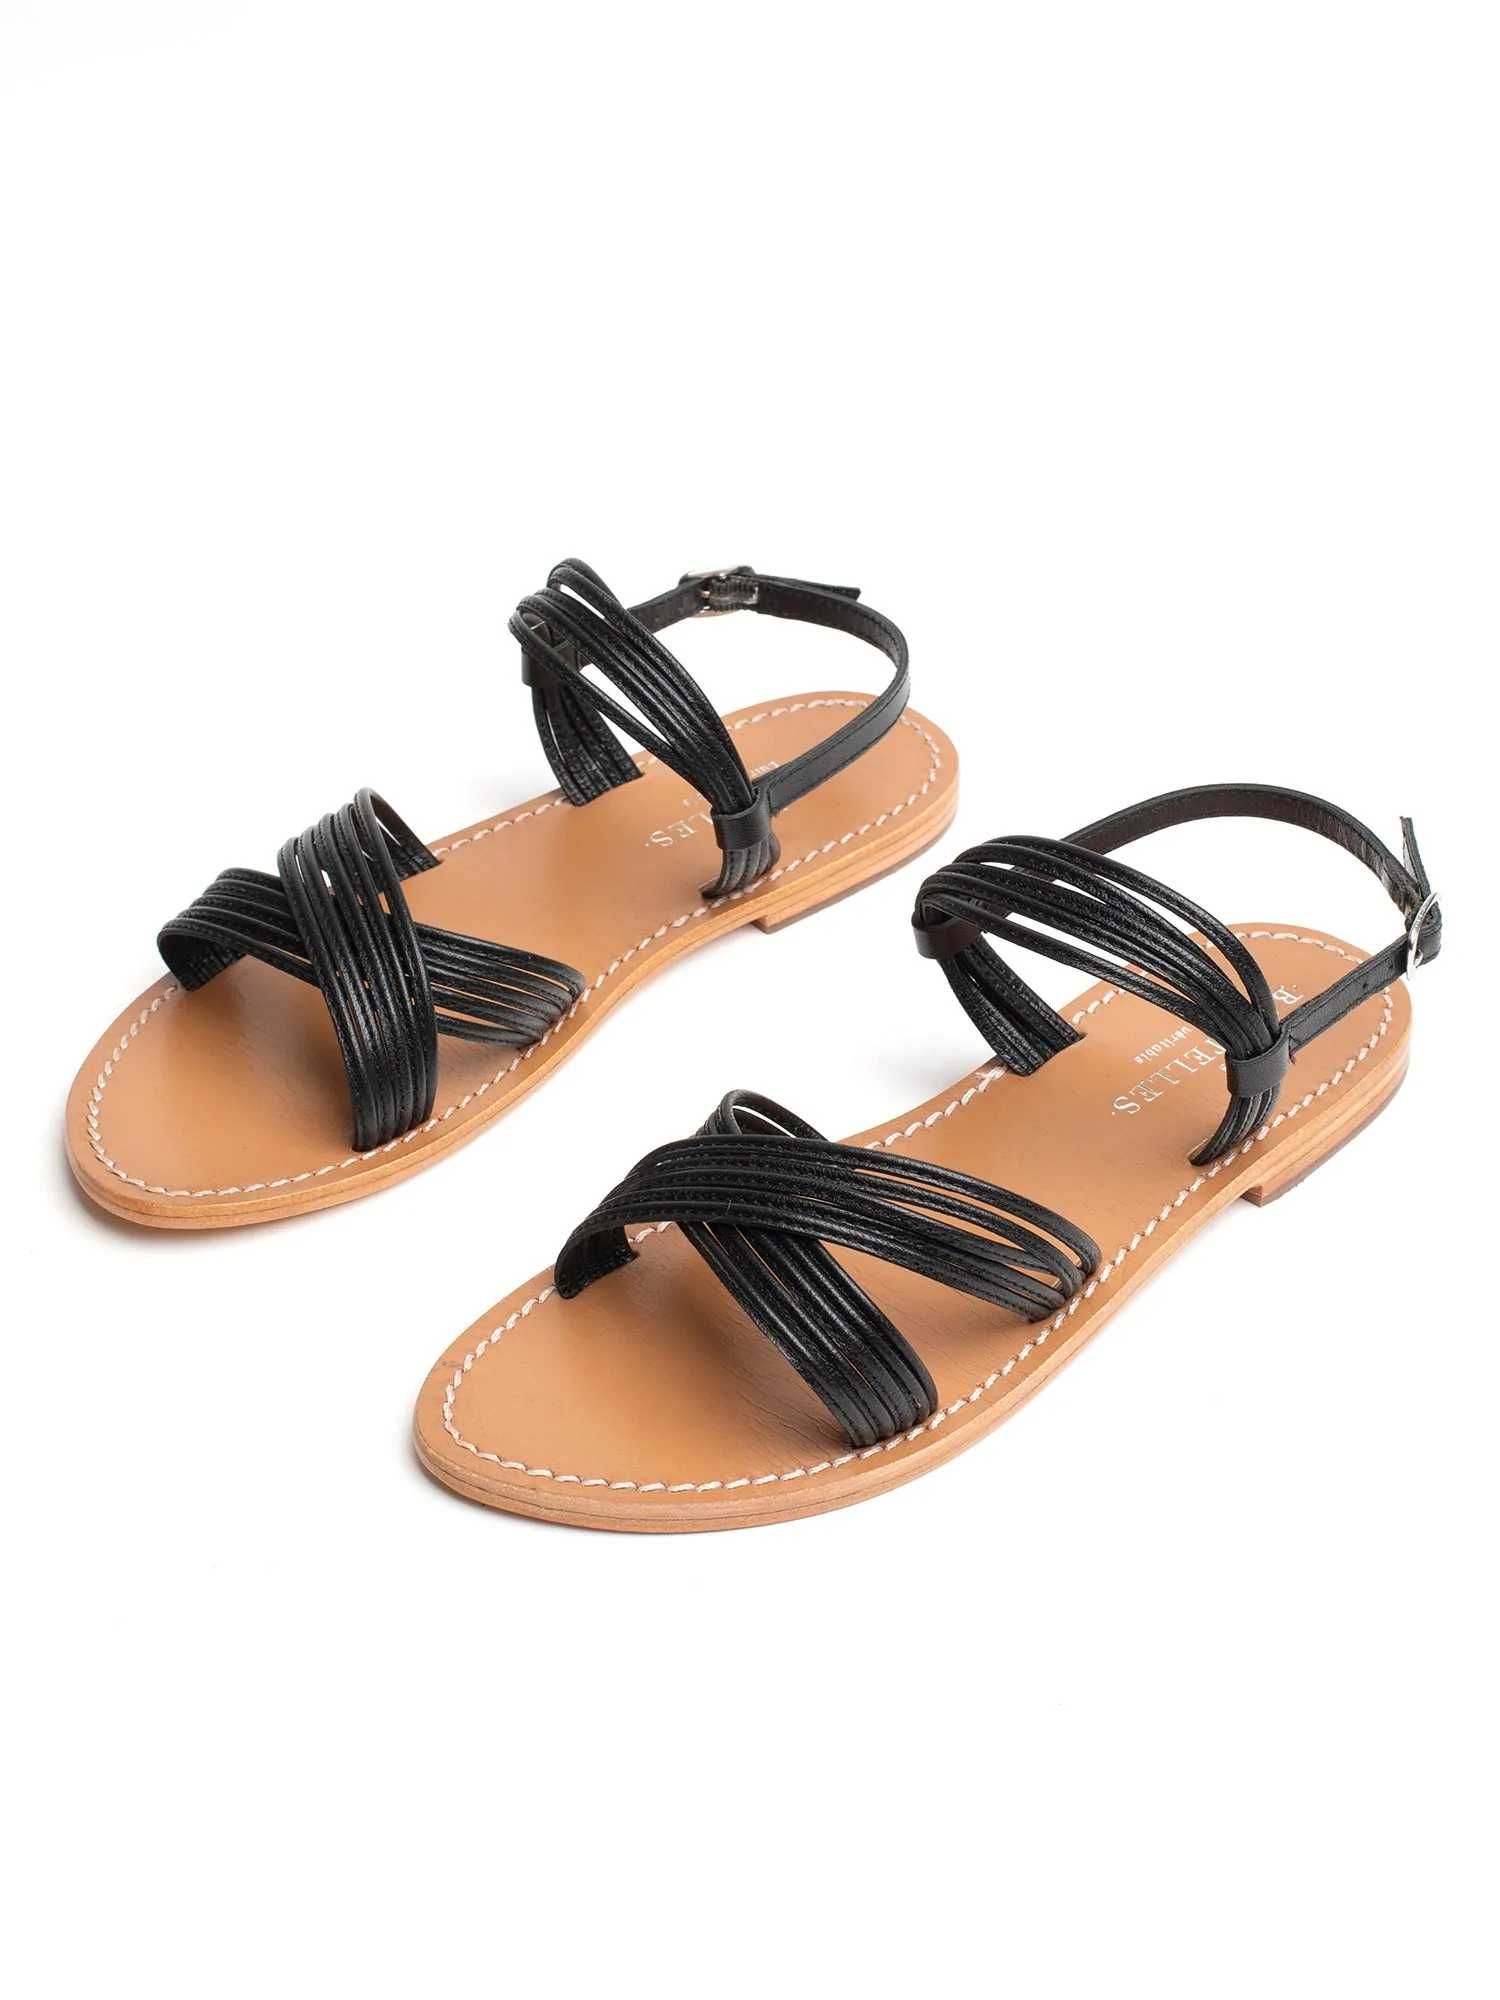 НОВИ Les Bagatelles MONTBRETIA Sandals дамски сандали/естествена кожа